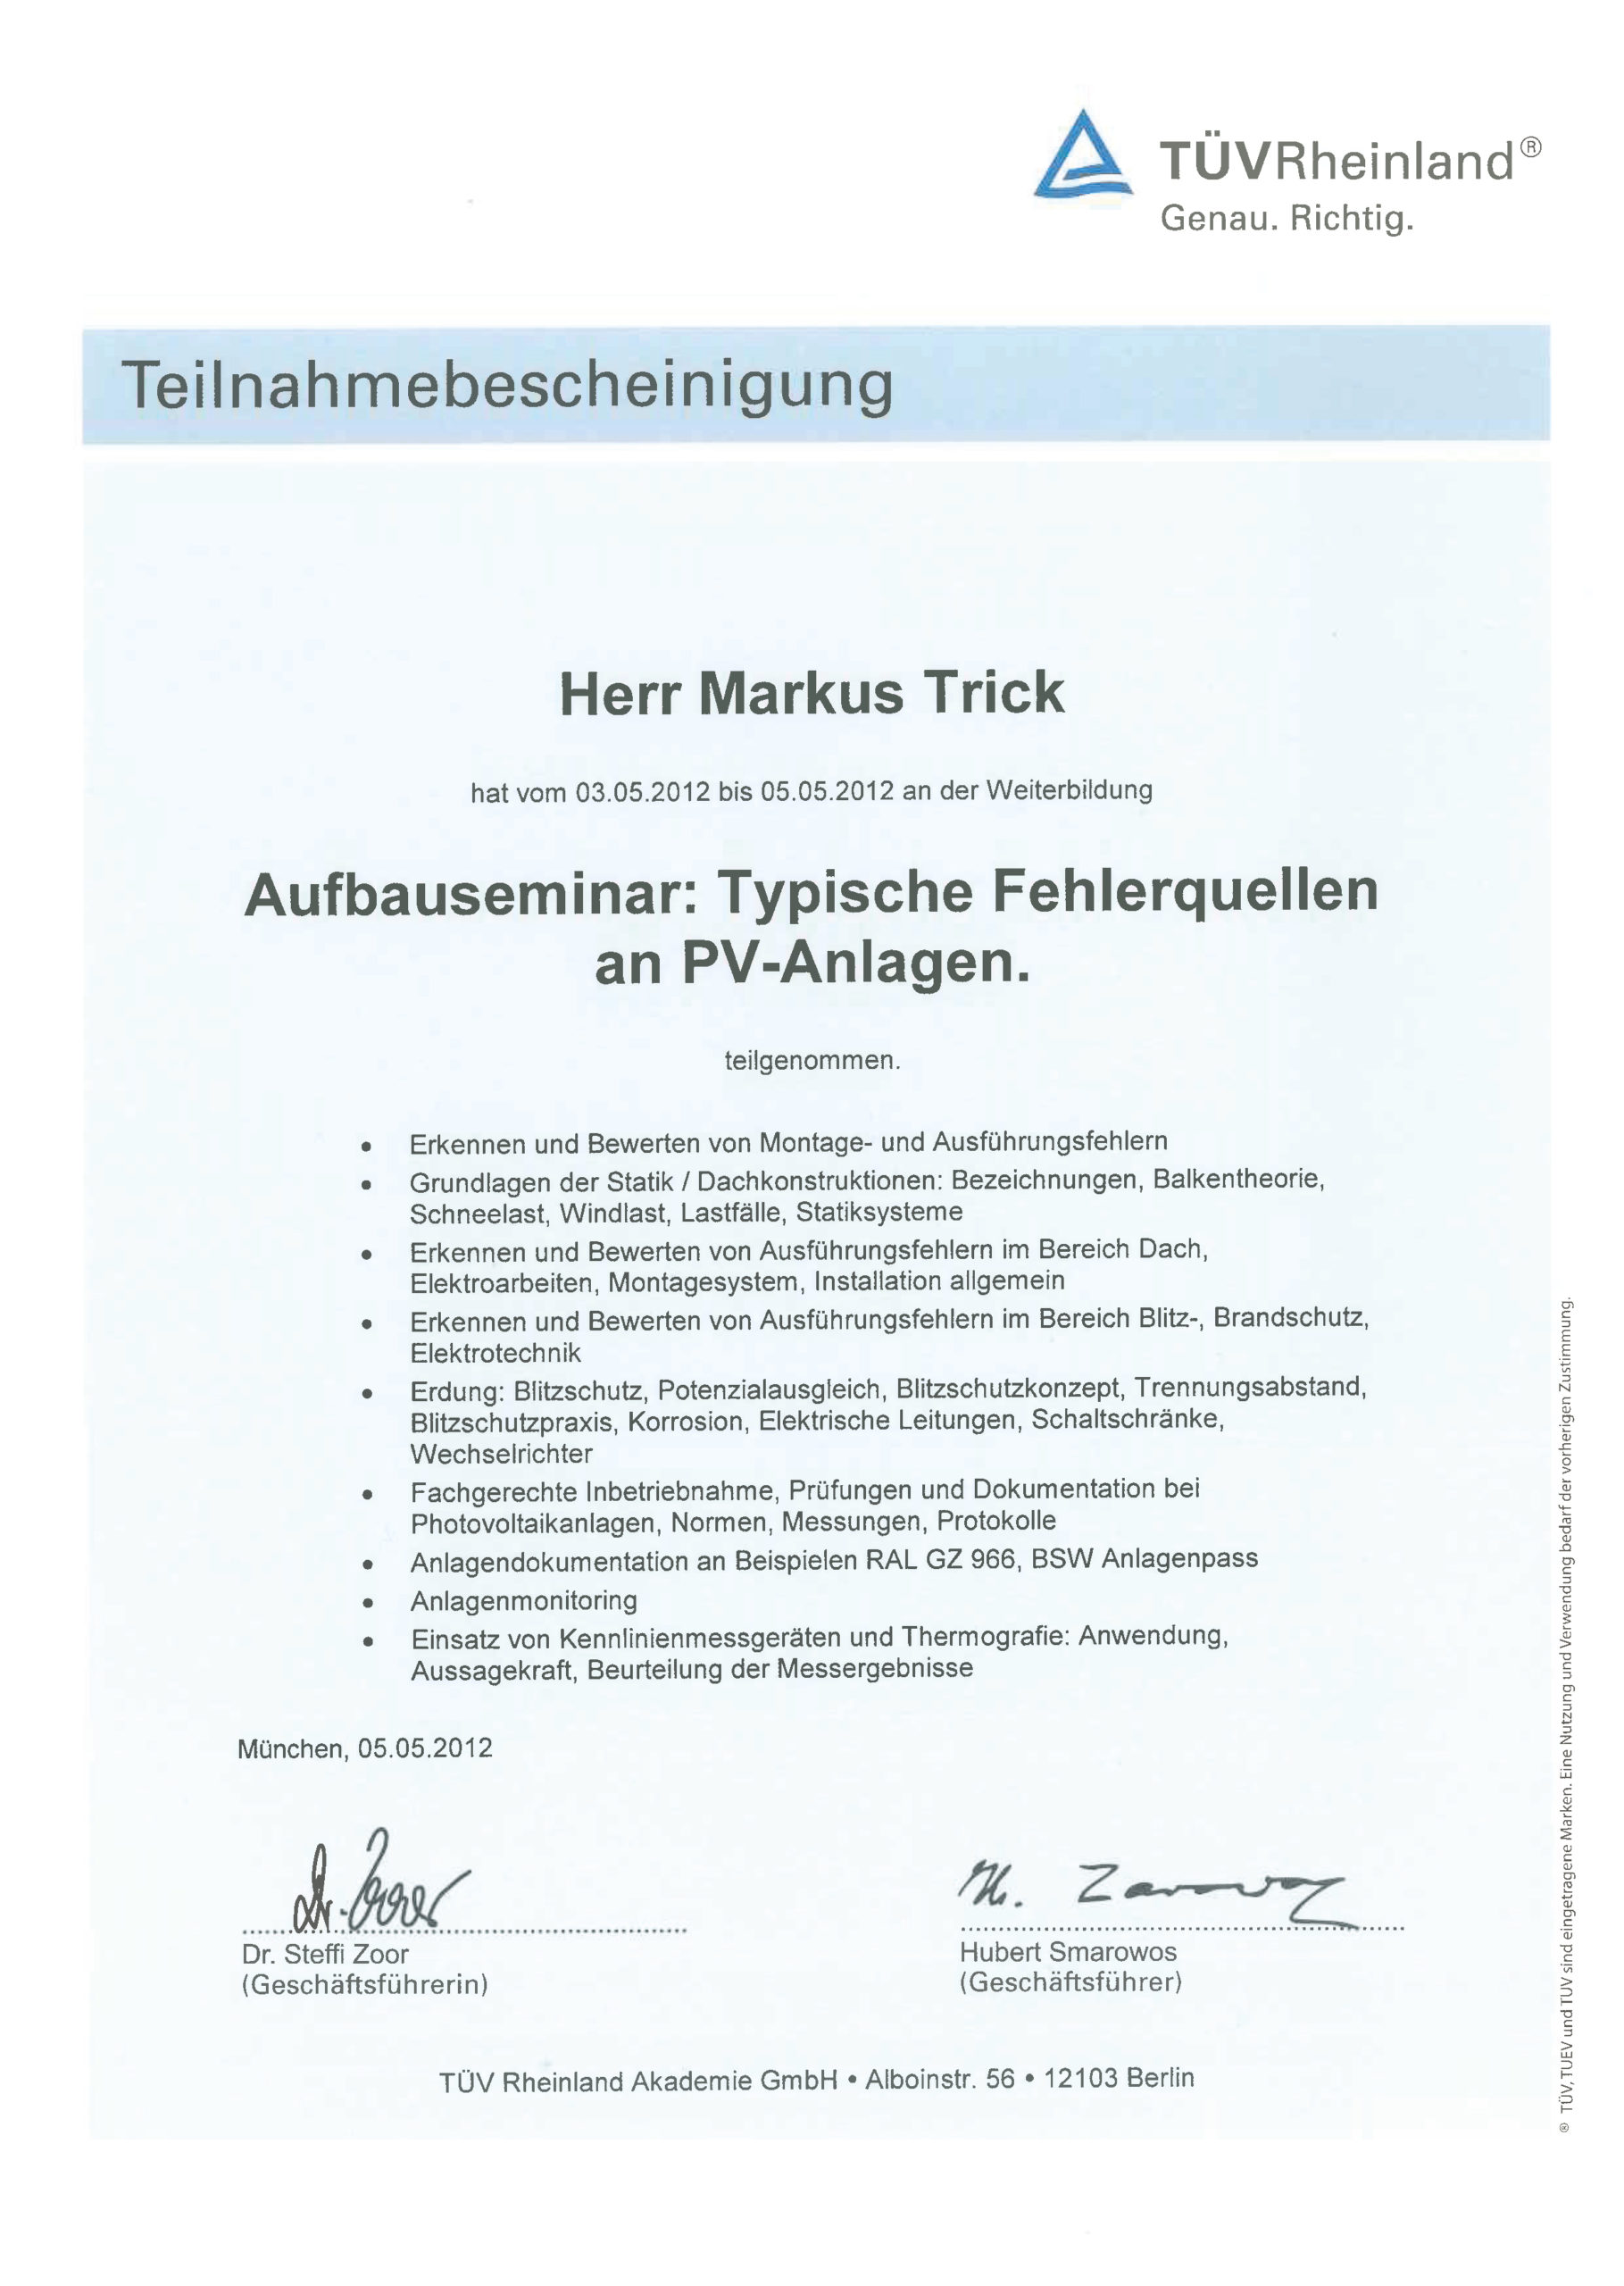 Teilnahmebescheinigung TÜV - Typische Fehlerquellen an PV-Anlagen - Markus Trick